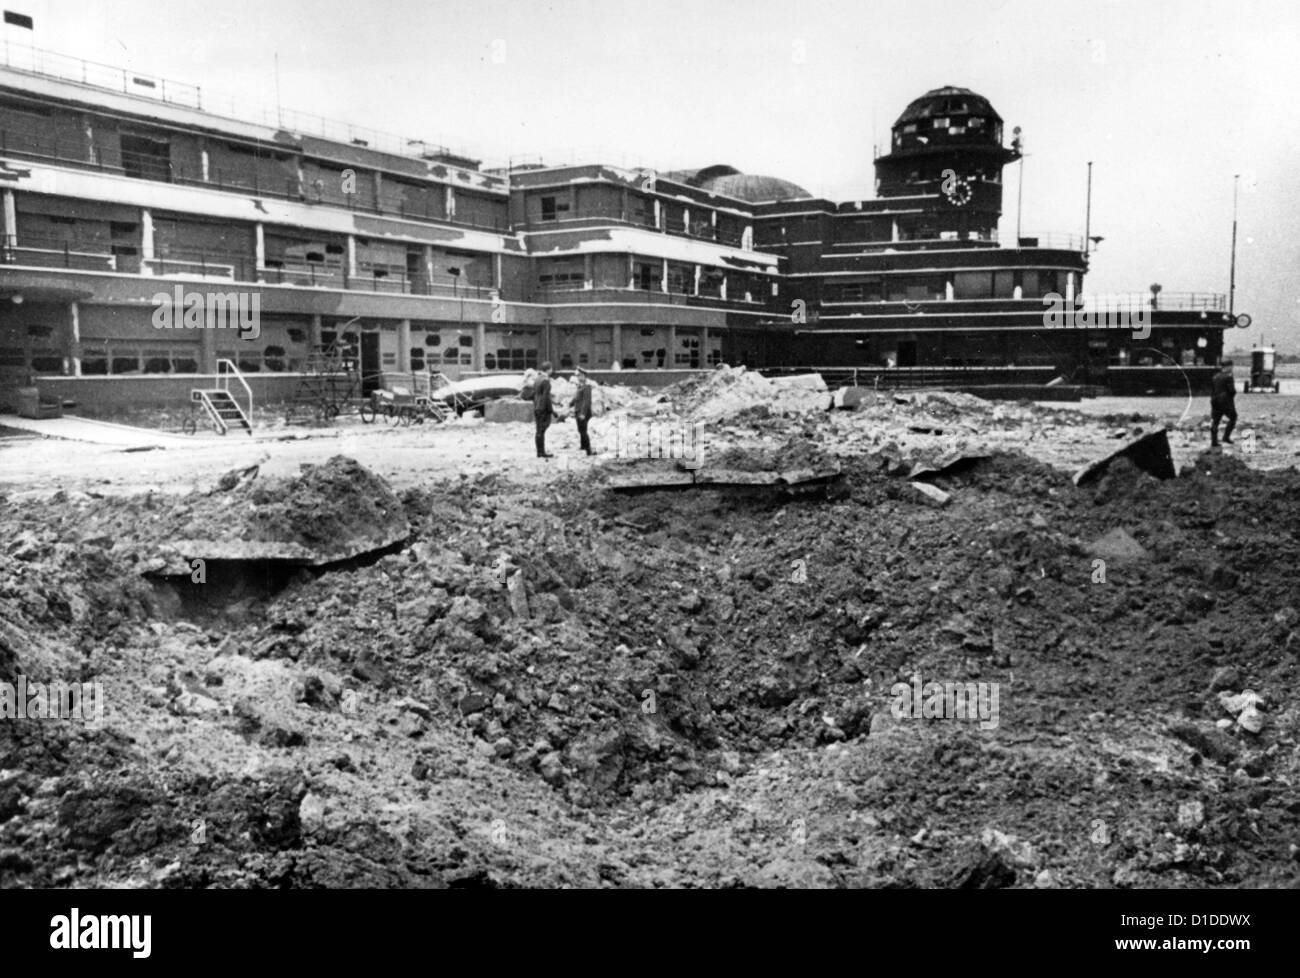 Un cratere di bombe è raffigurato all'aeroporto le Bourget, che è stato occupato dalle truppe tedesche, vicino a Parigi, Francia, nel giugno 1940. Fotoarchiv für Zeitgeschichte Foto Stock